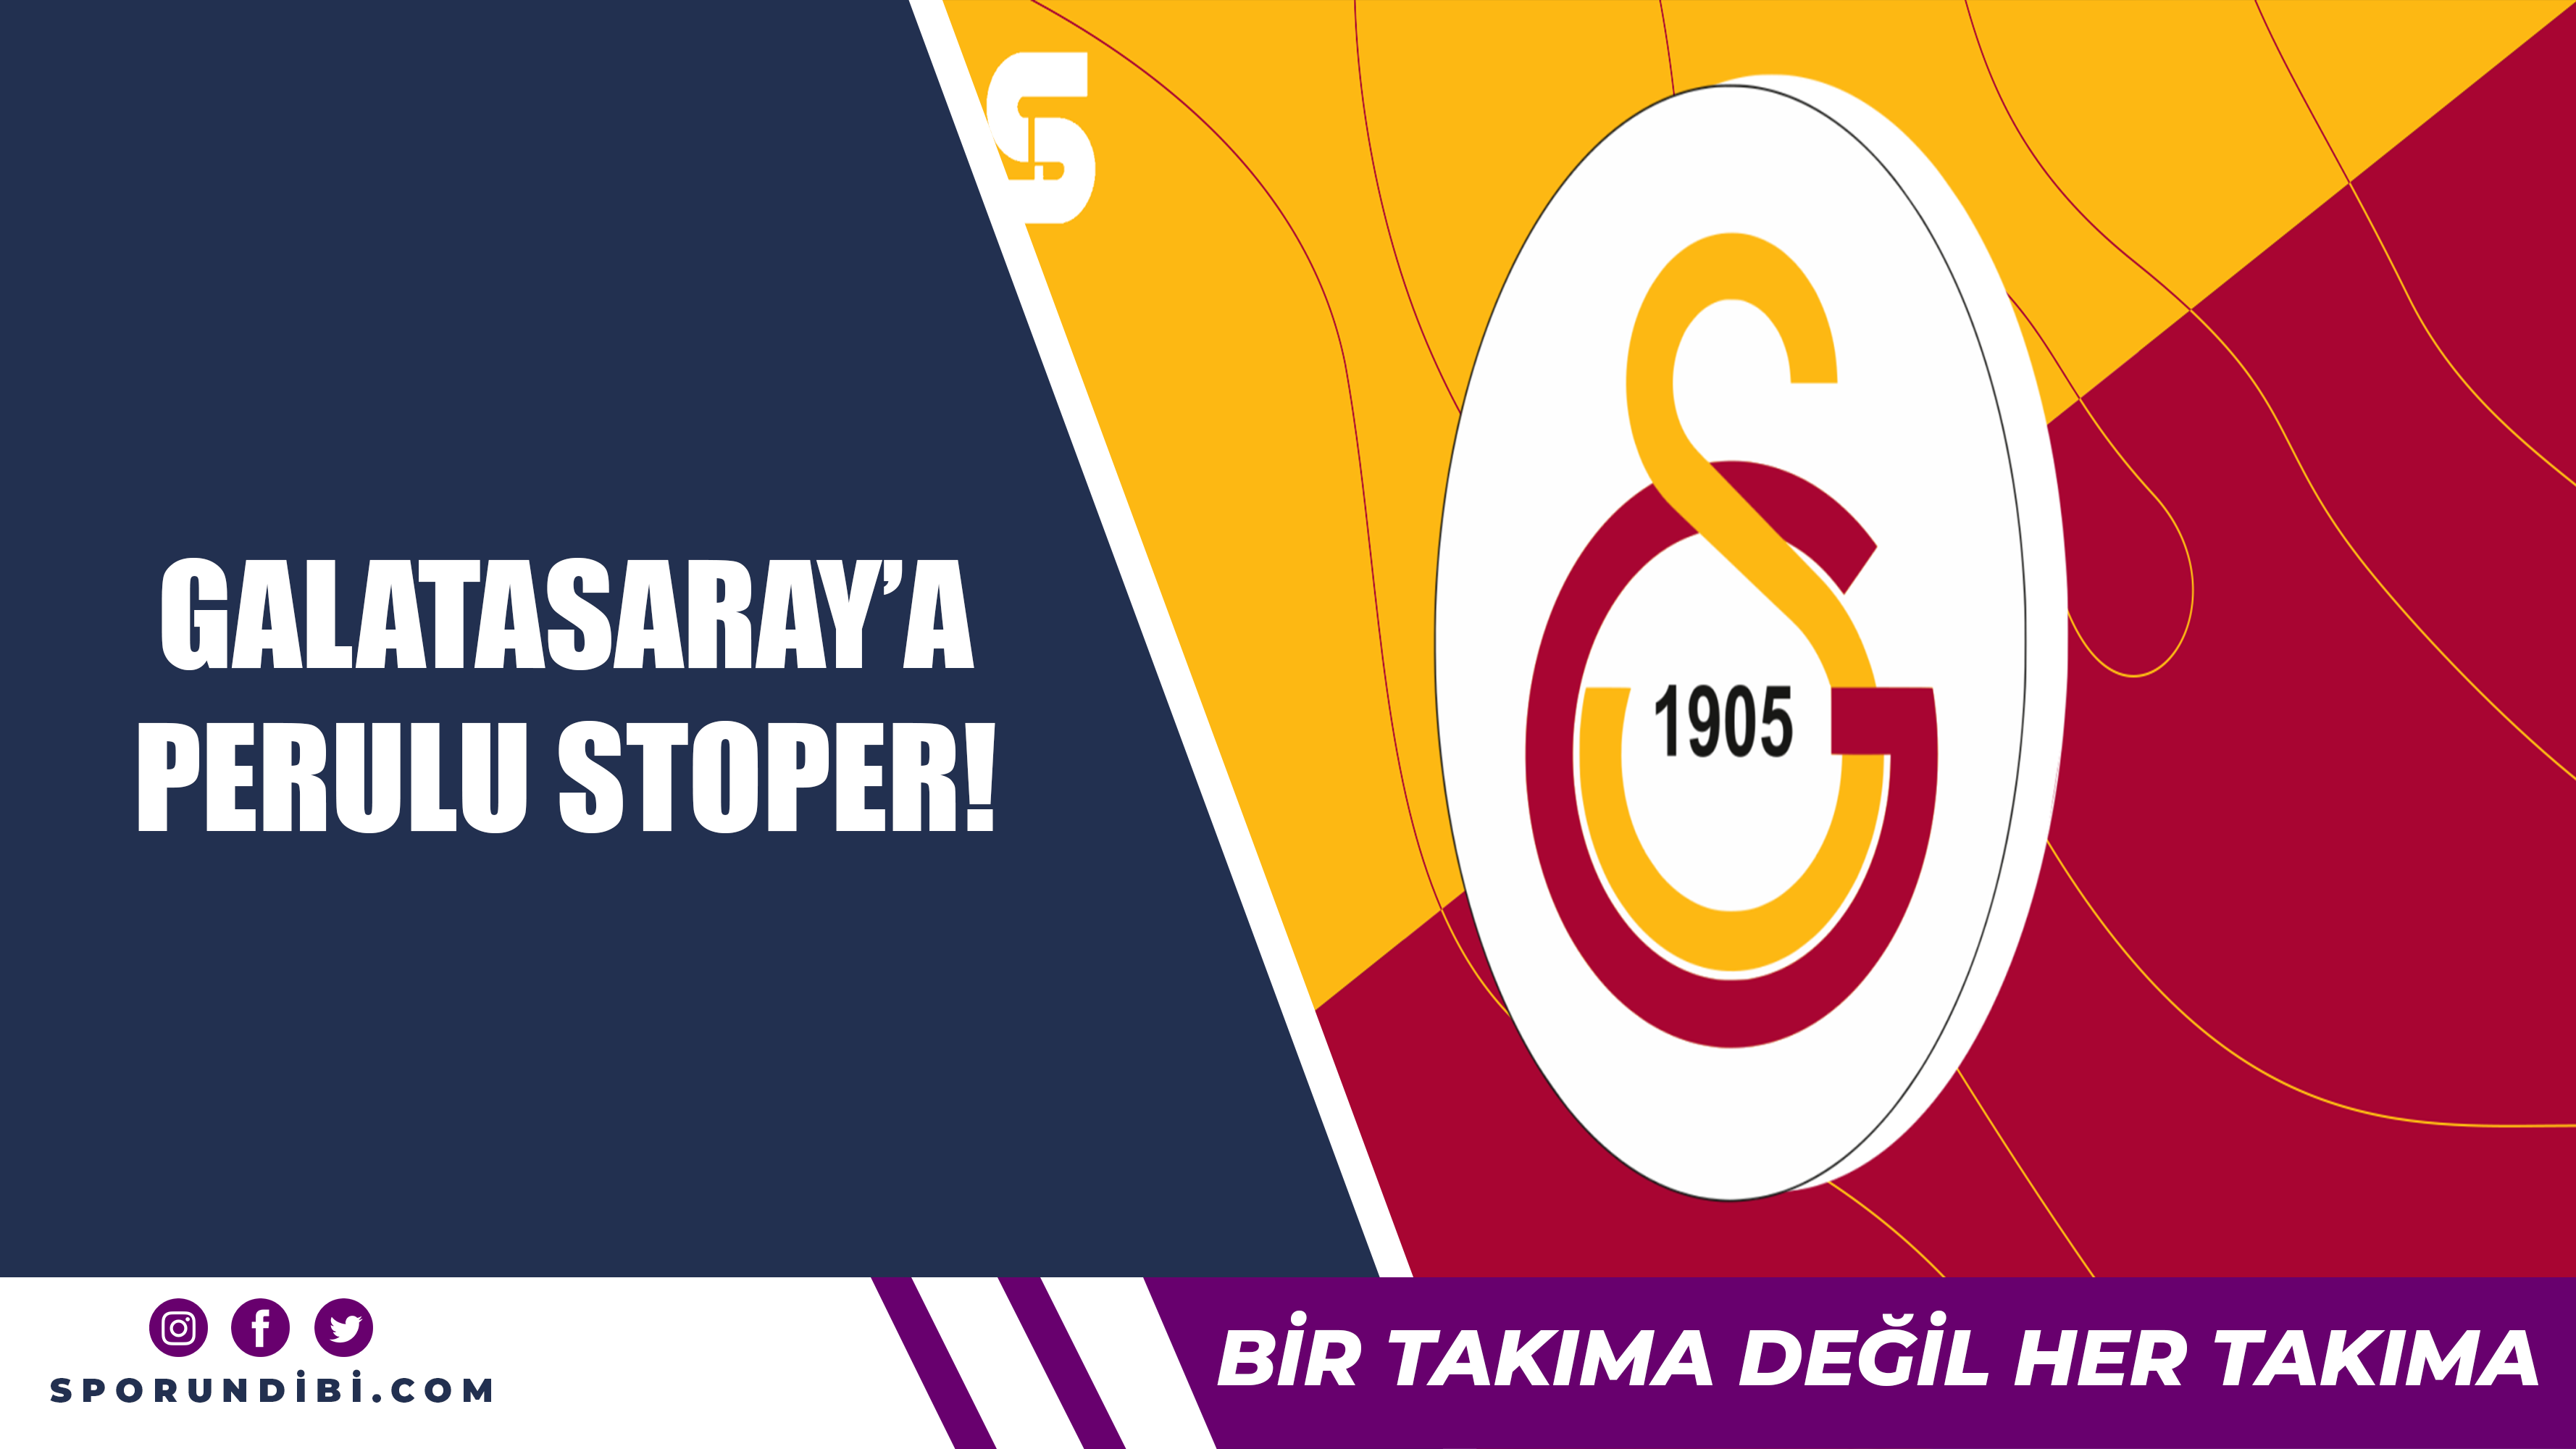 Galatasaray'a Perulu stoper!